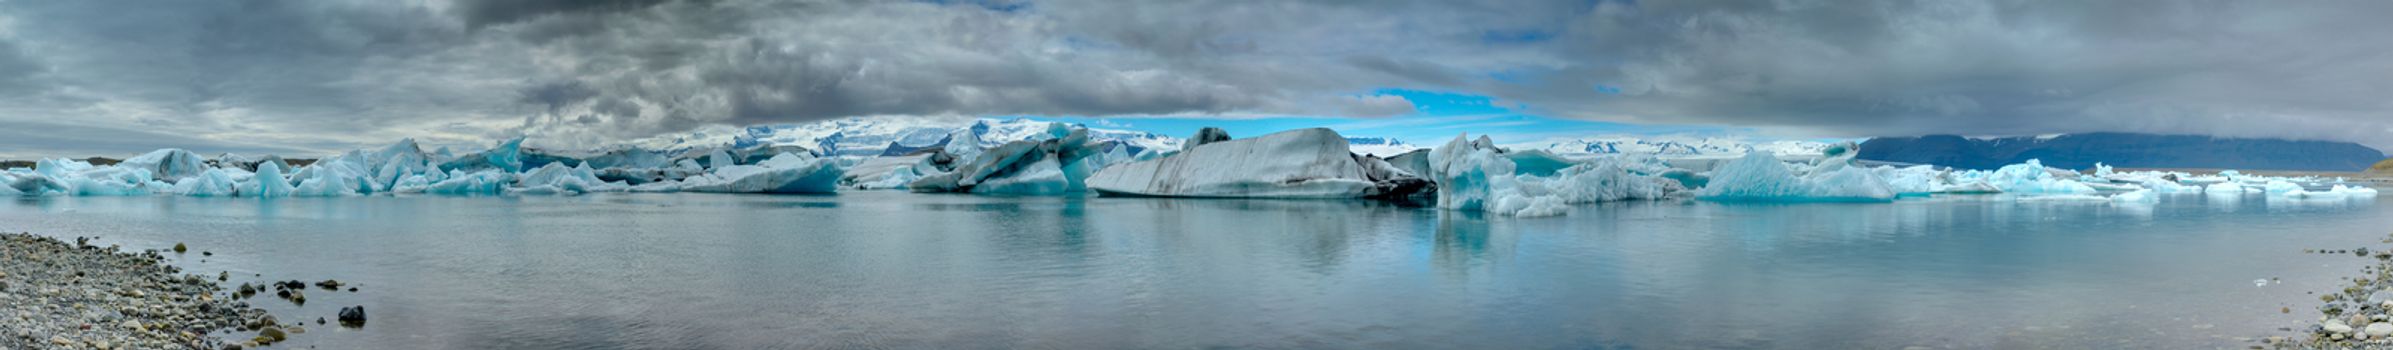 Panorama of the Jokulsarlon glaciar lagoon in Iceland